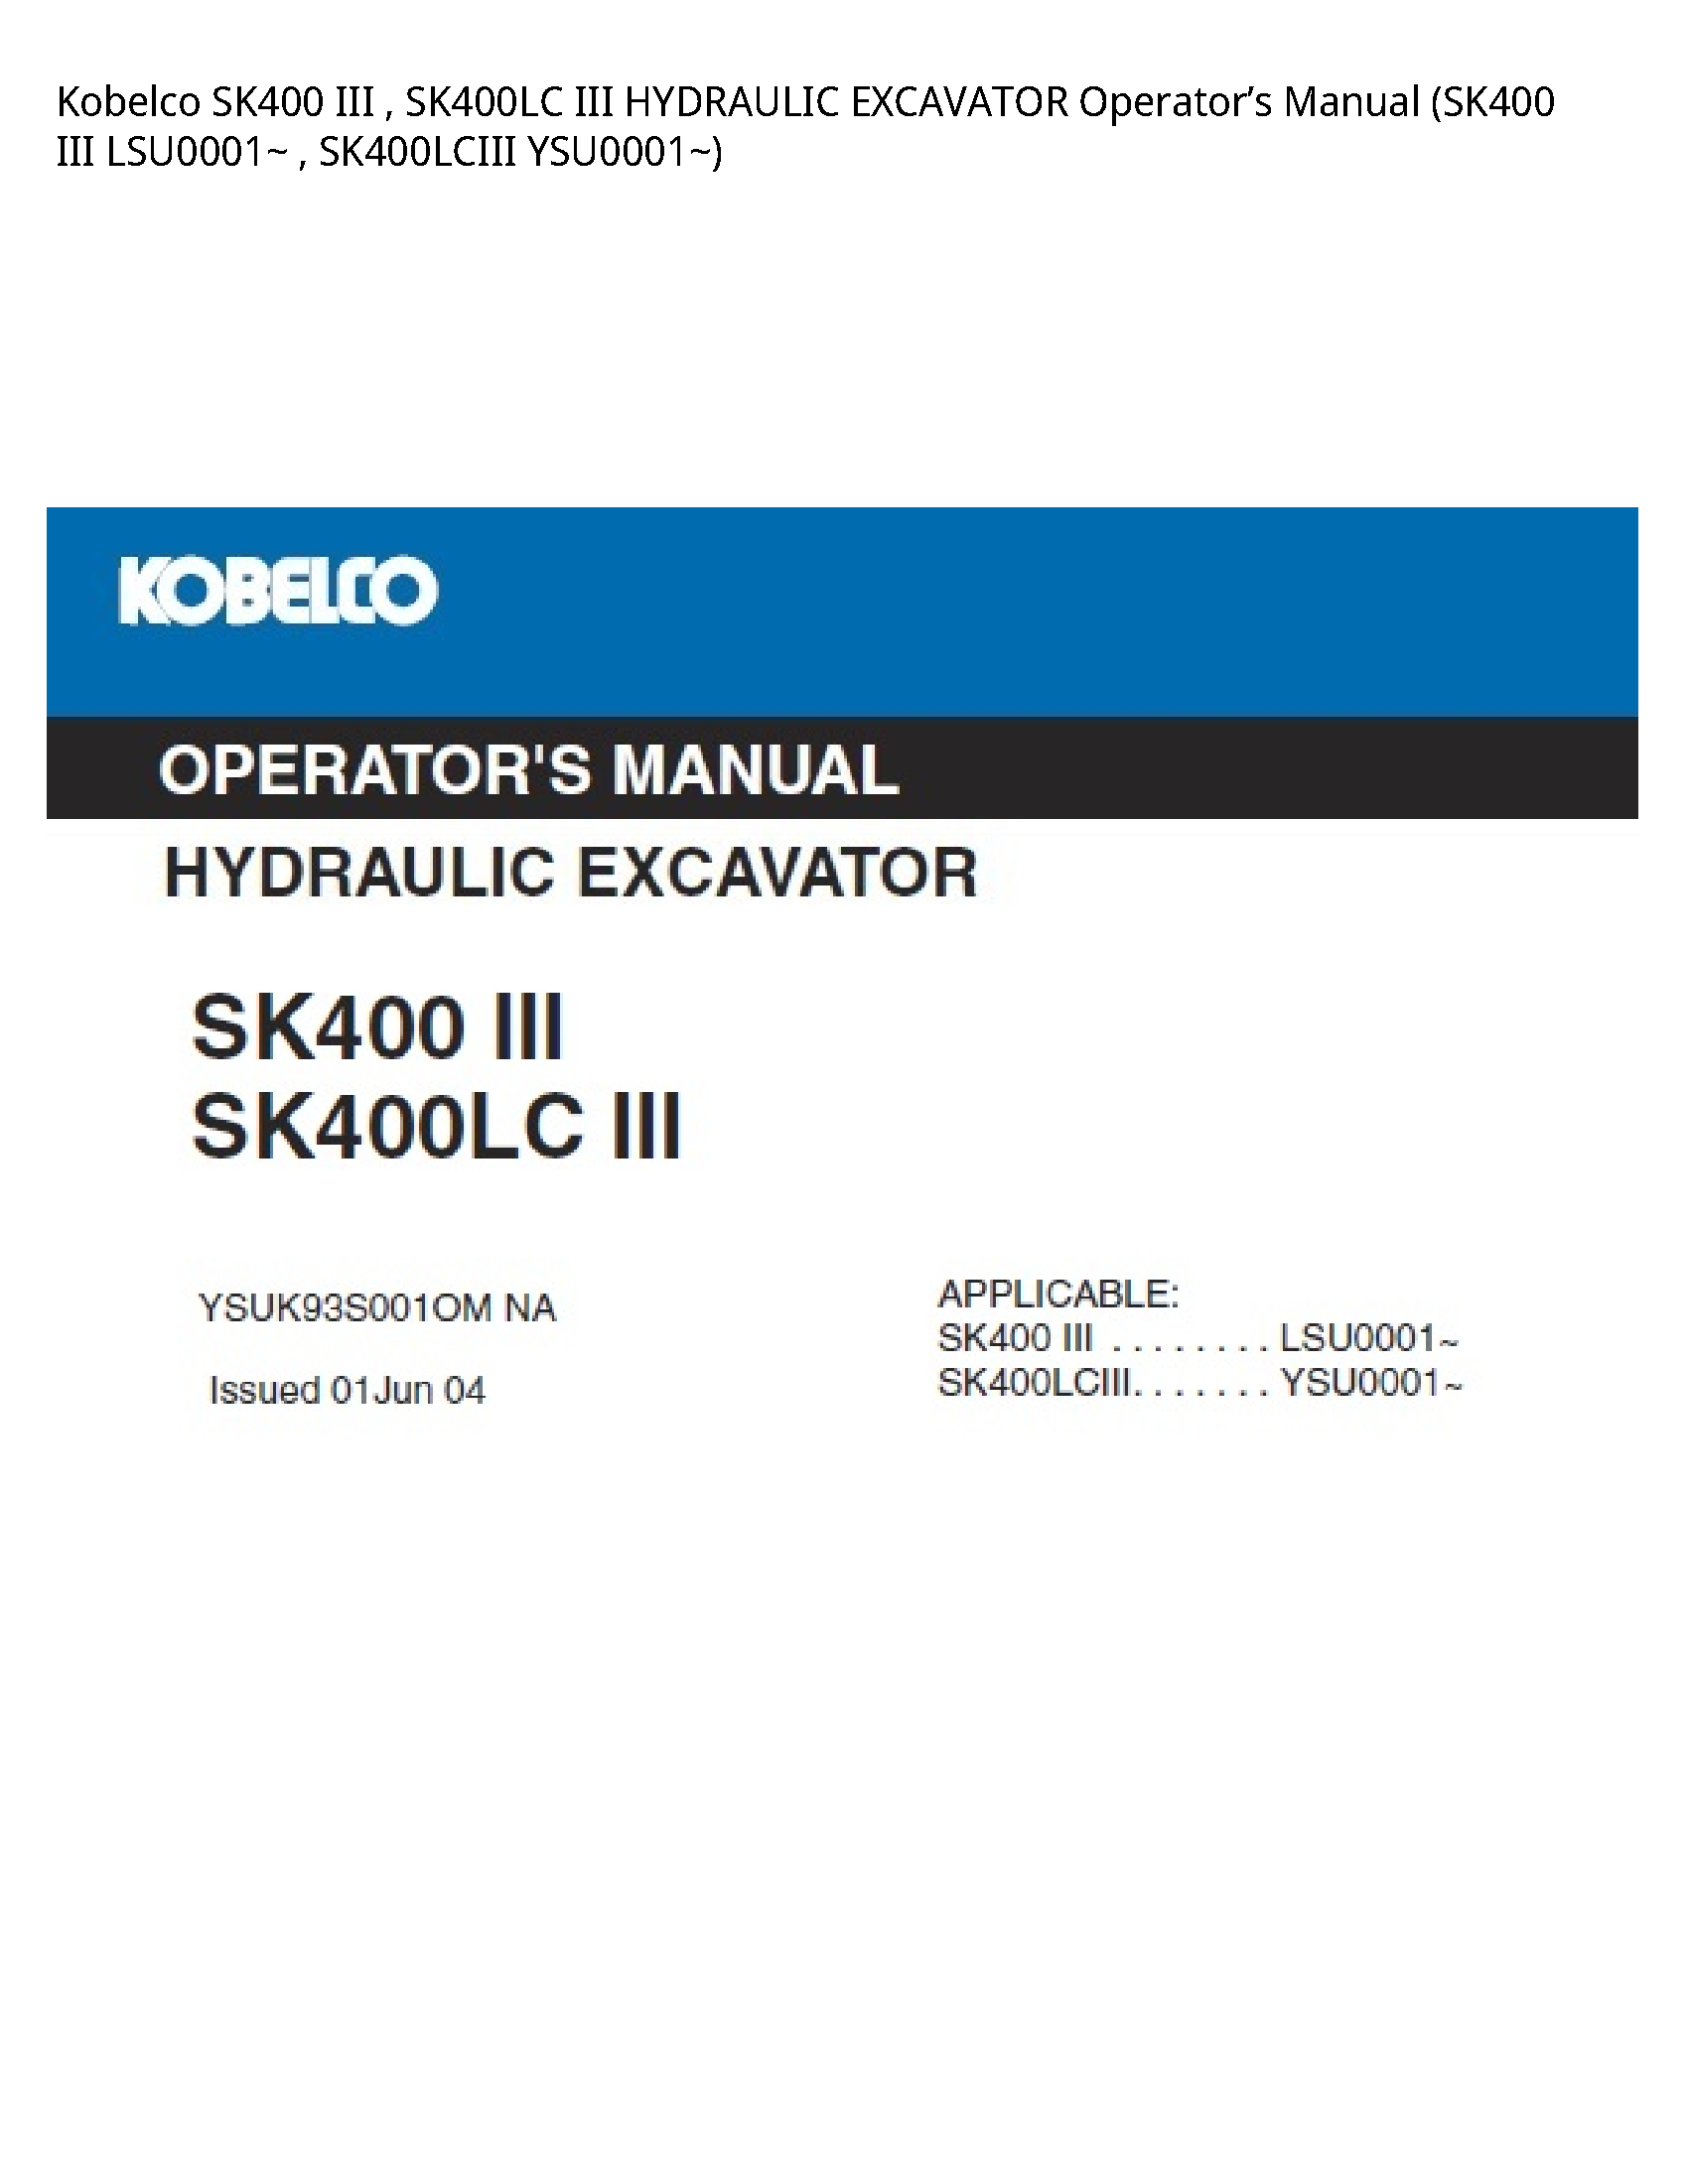 Kobelco SK400 III III HYDRAULIC EXCAVATOR Operator’s manual